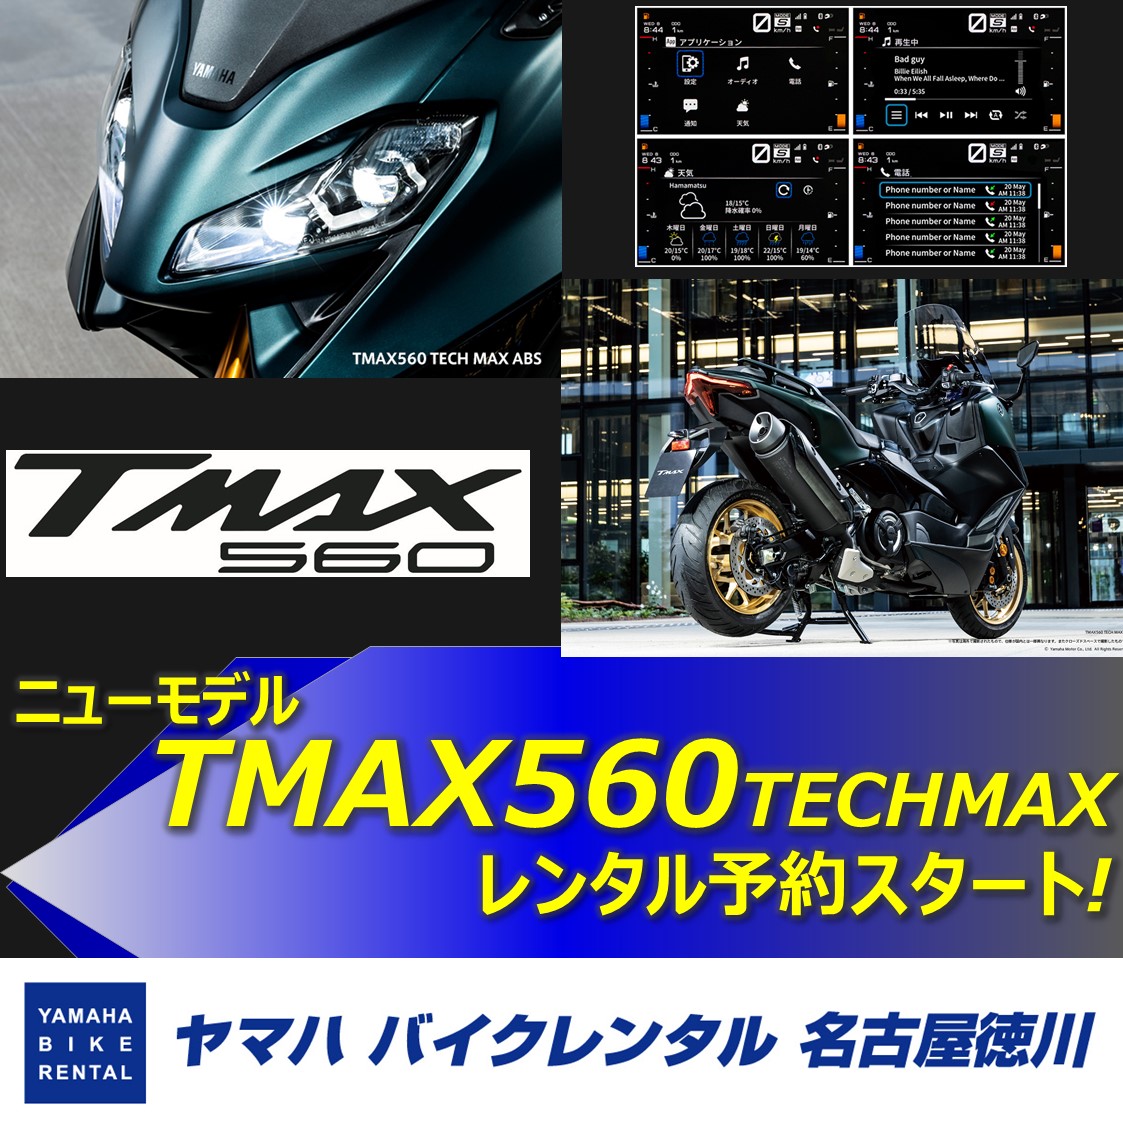 TMAX560